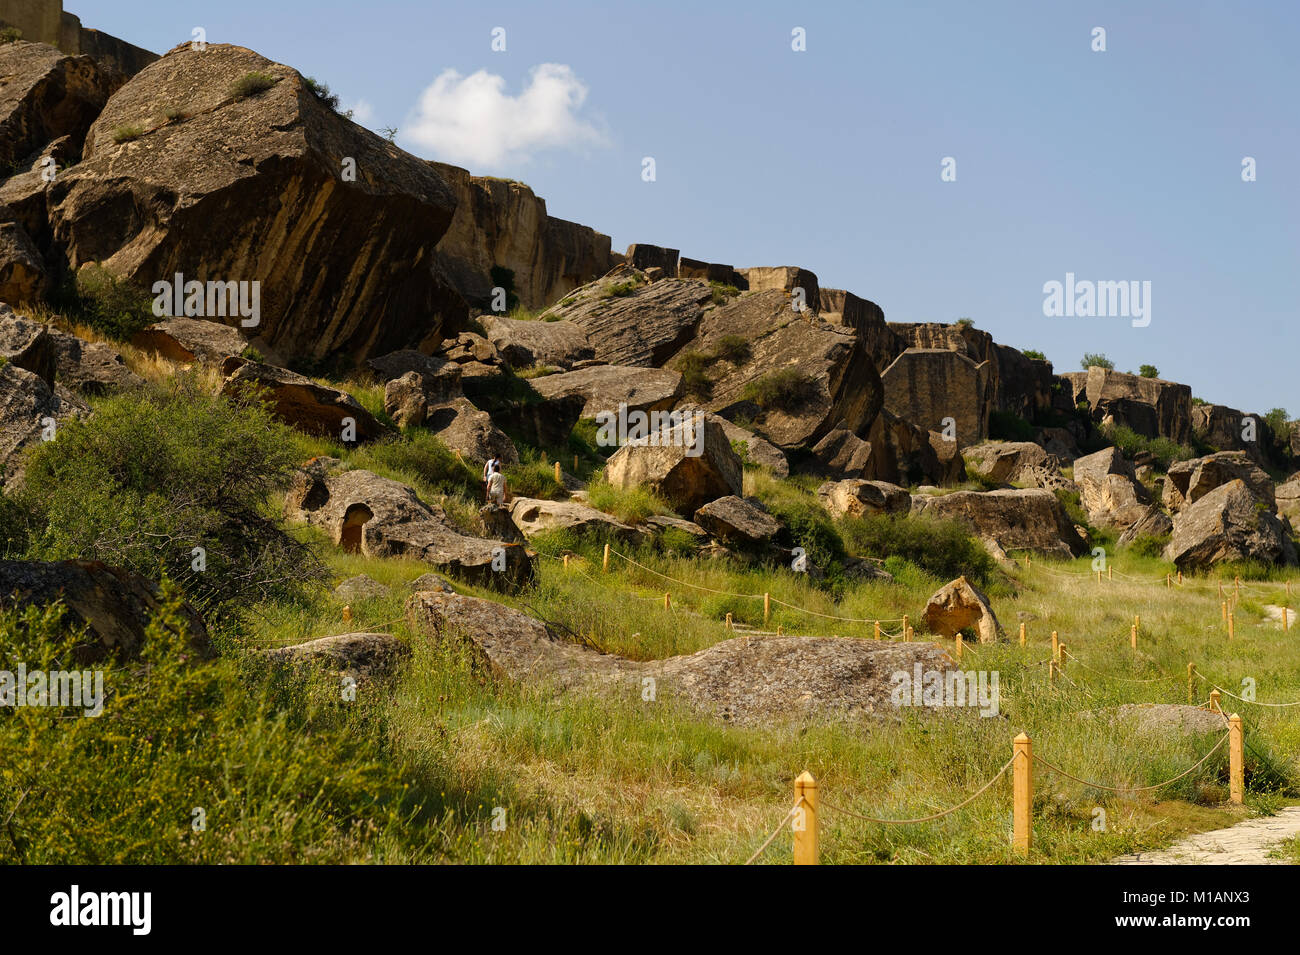 Parc national de Gobustan, Azerbaïdjan, site du patrimoine mondial de l'UNESCO Banque D'Images